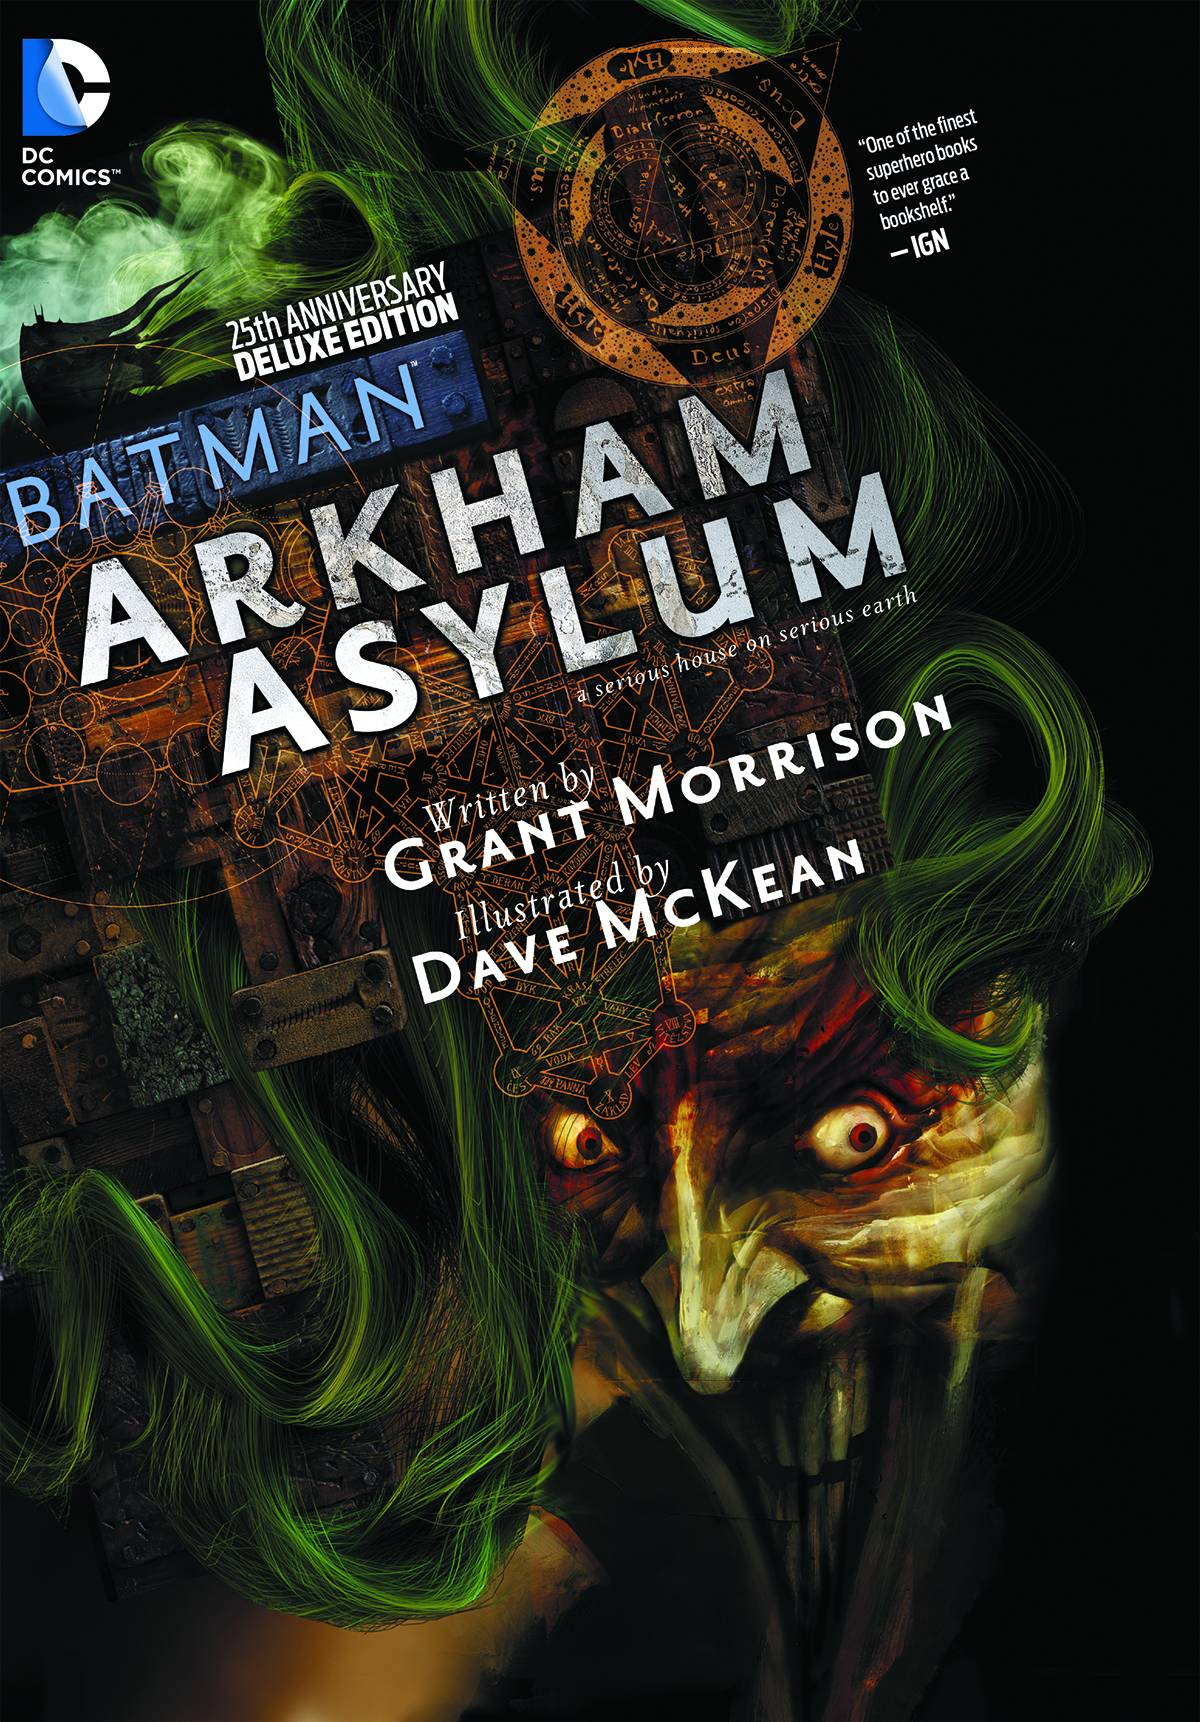 BATMAN: ARKHAM ASYLUM THE DELUXE EDITION